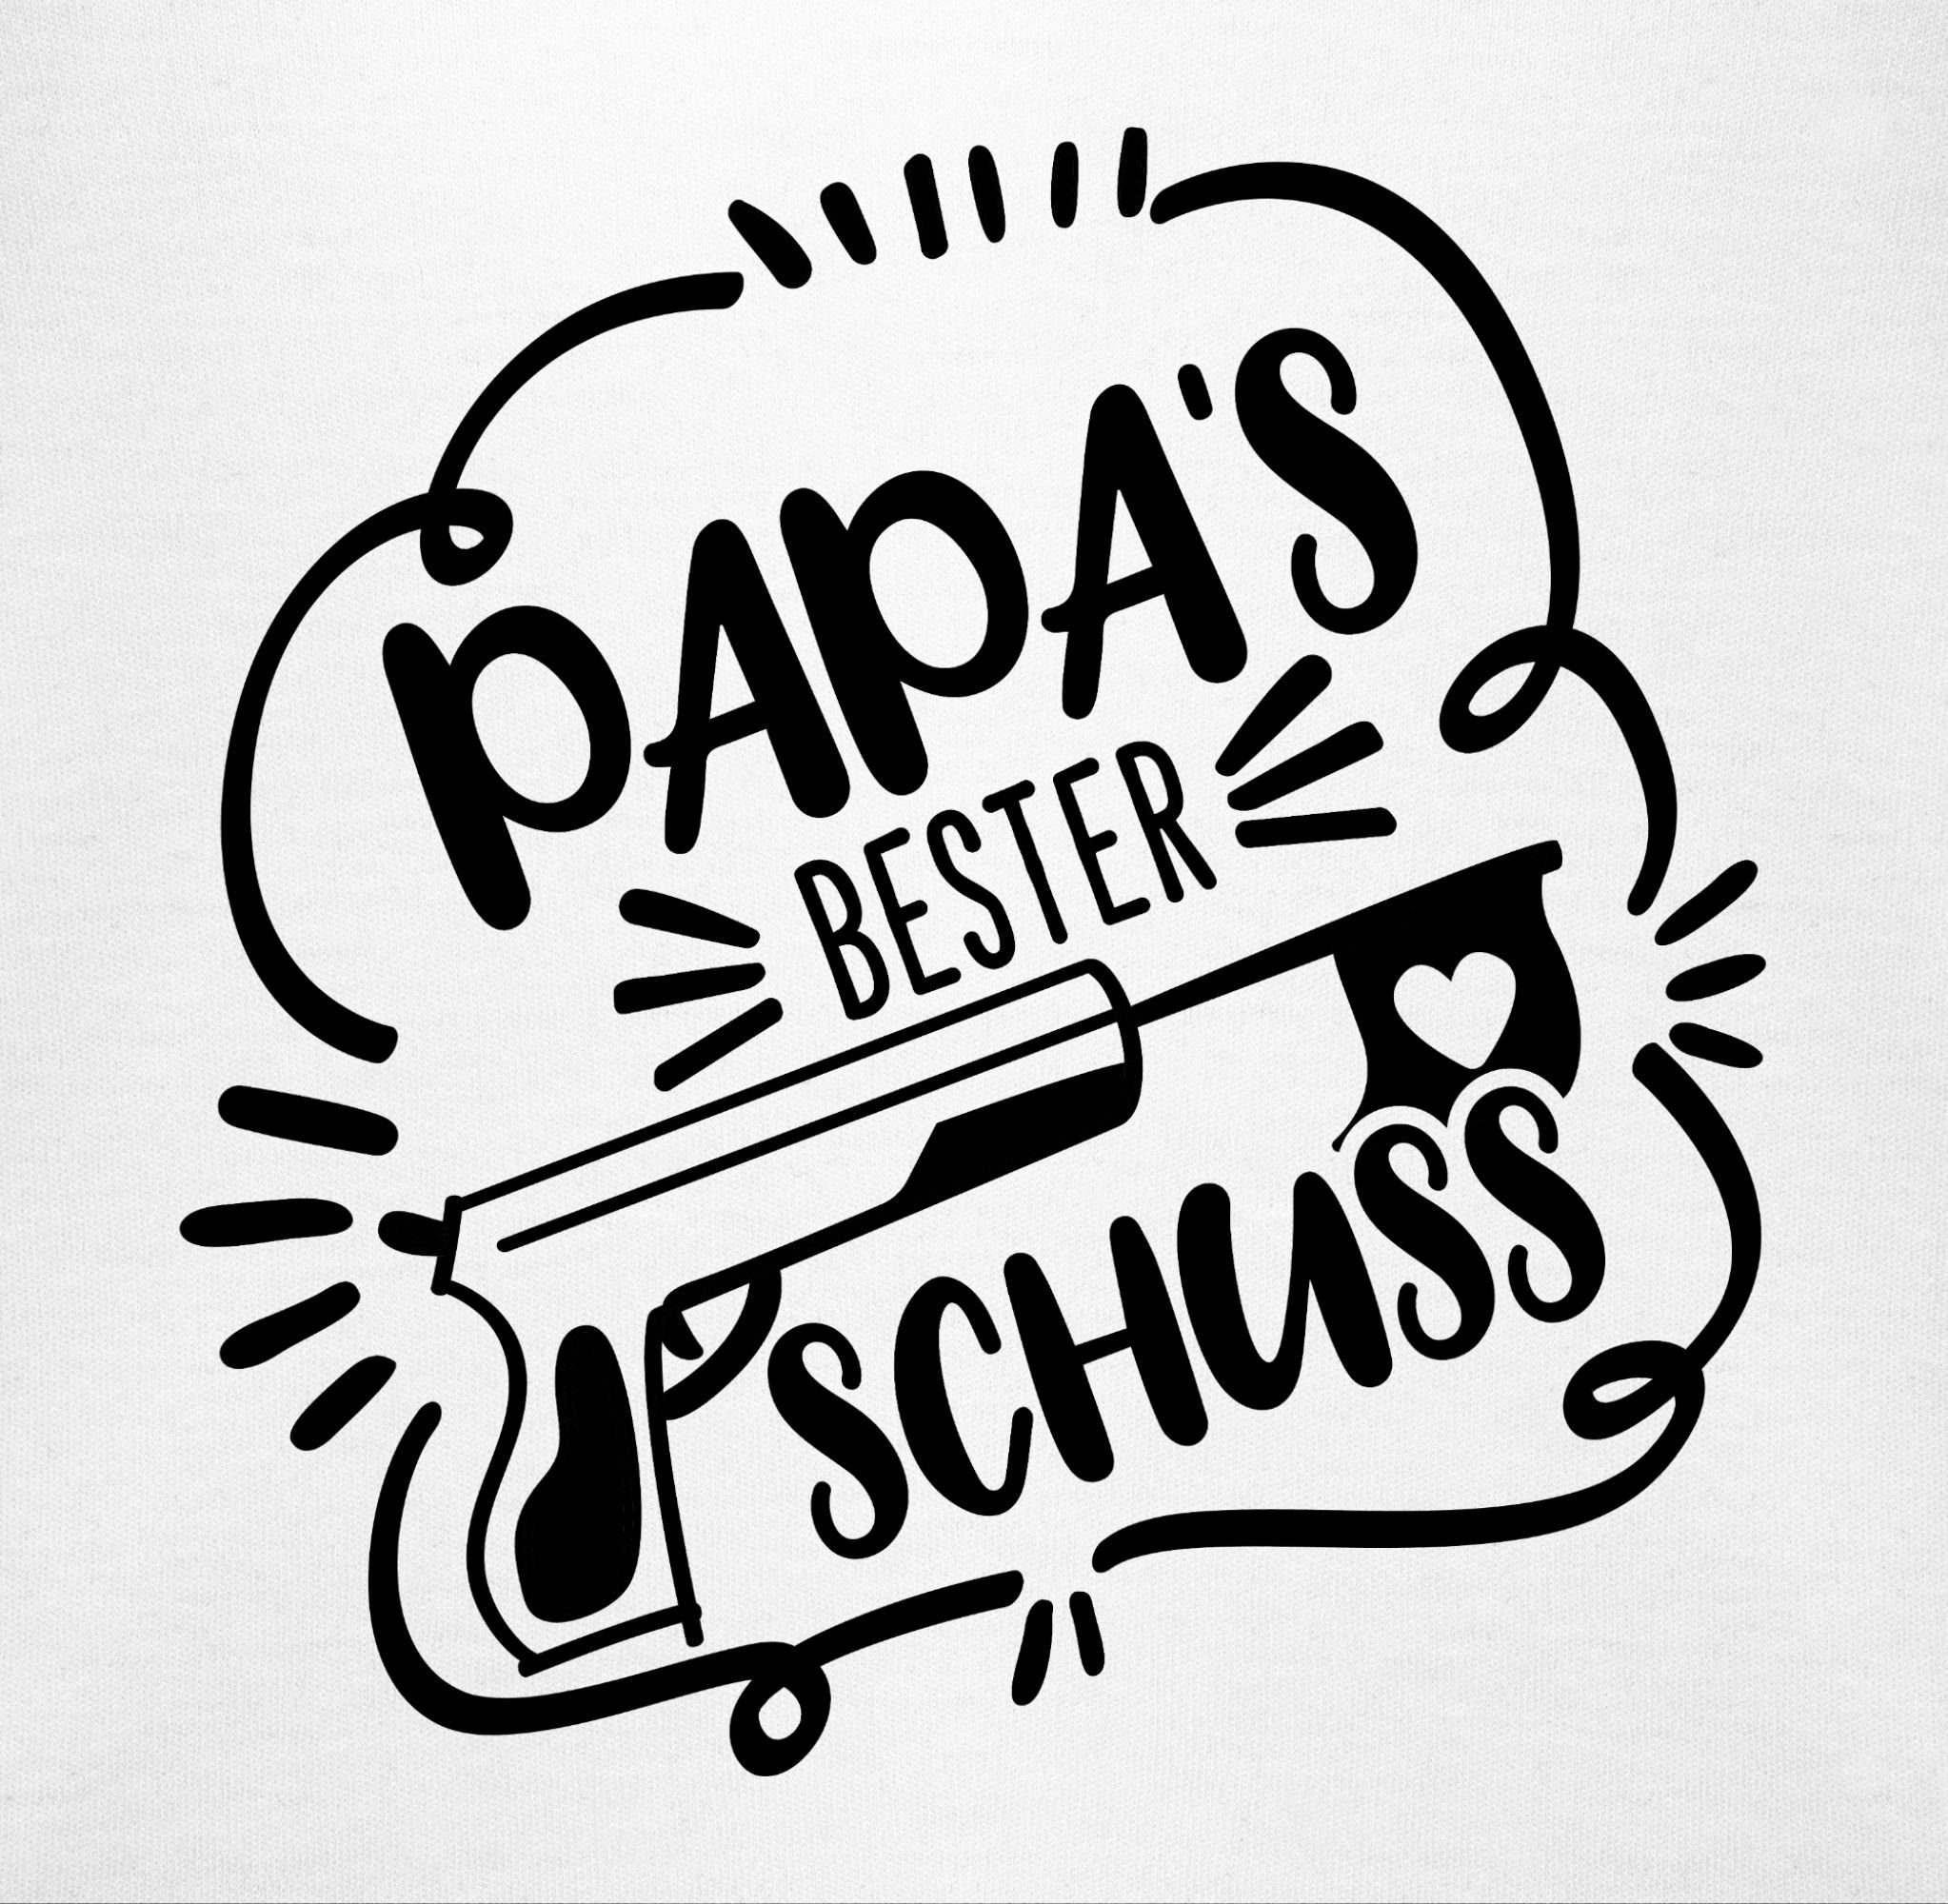 Shirtracer Shirtbody Papas Baby schwarz Weiß Vatertag Comic 3 bester Treffer Geschenk